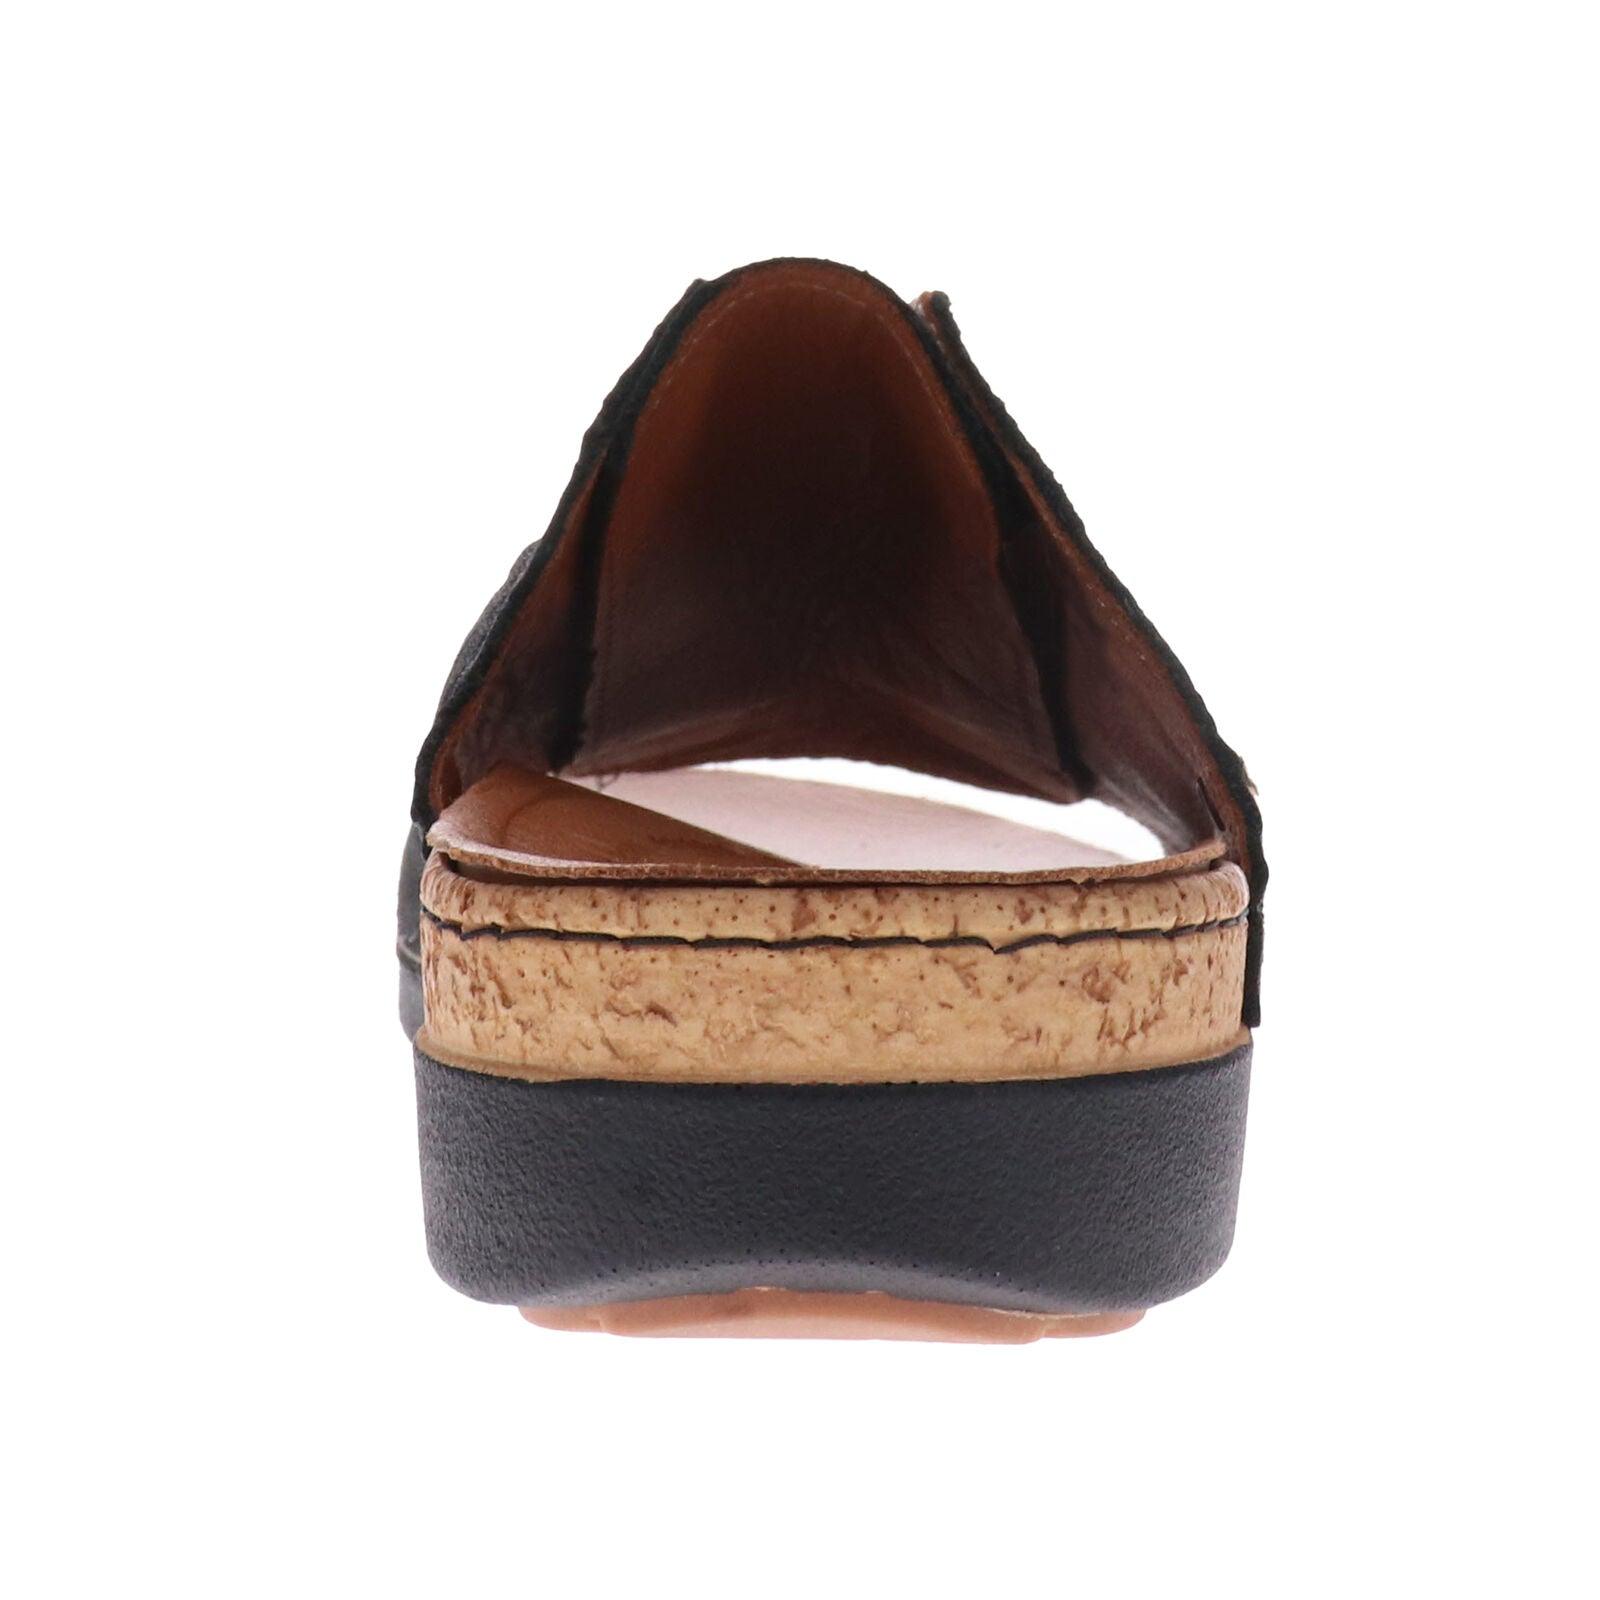 Antalya Slide Sandal - Revere Shoes